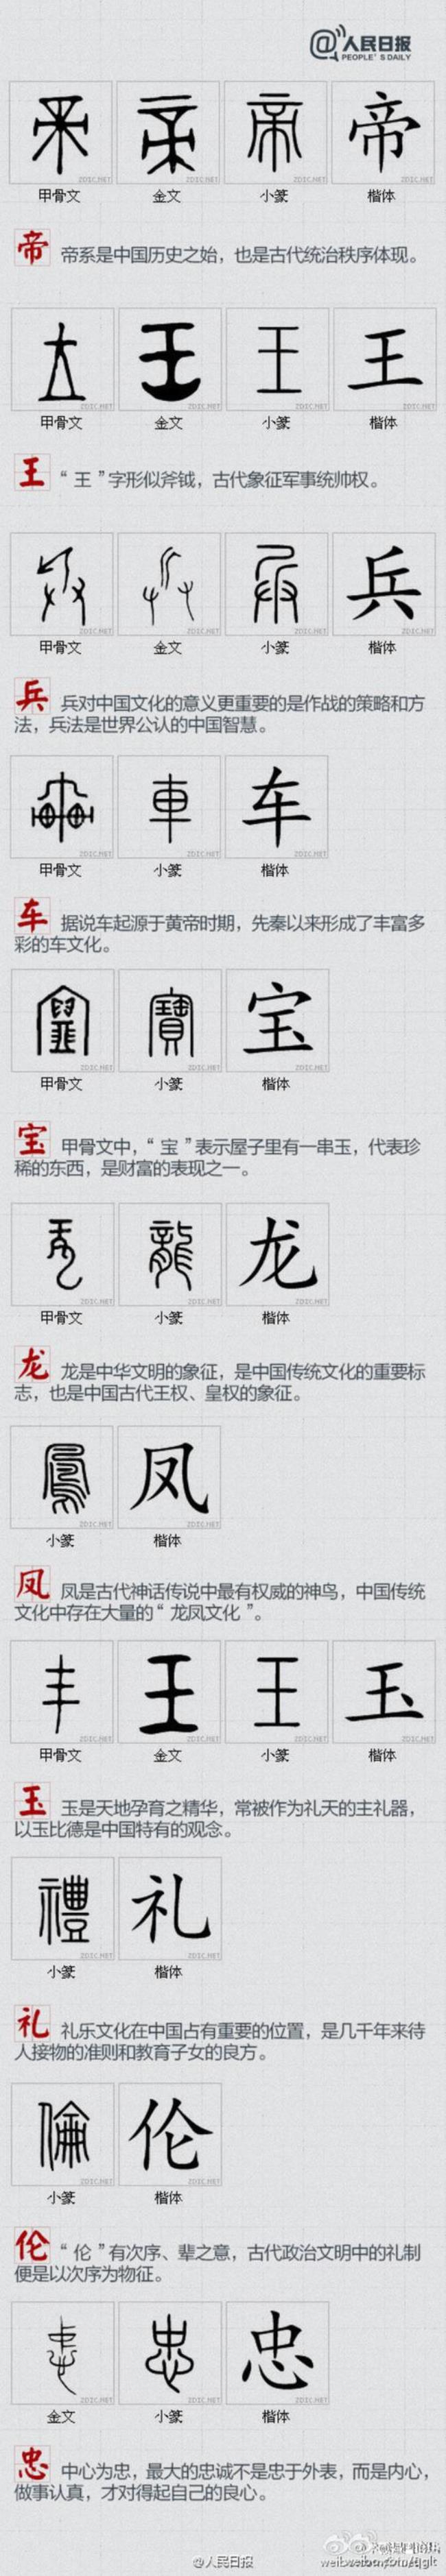 中华民族共享的文化符号有哪些